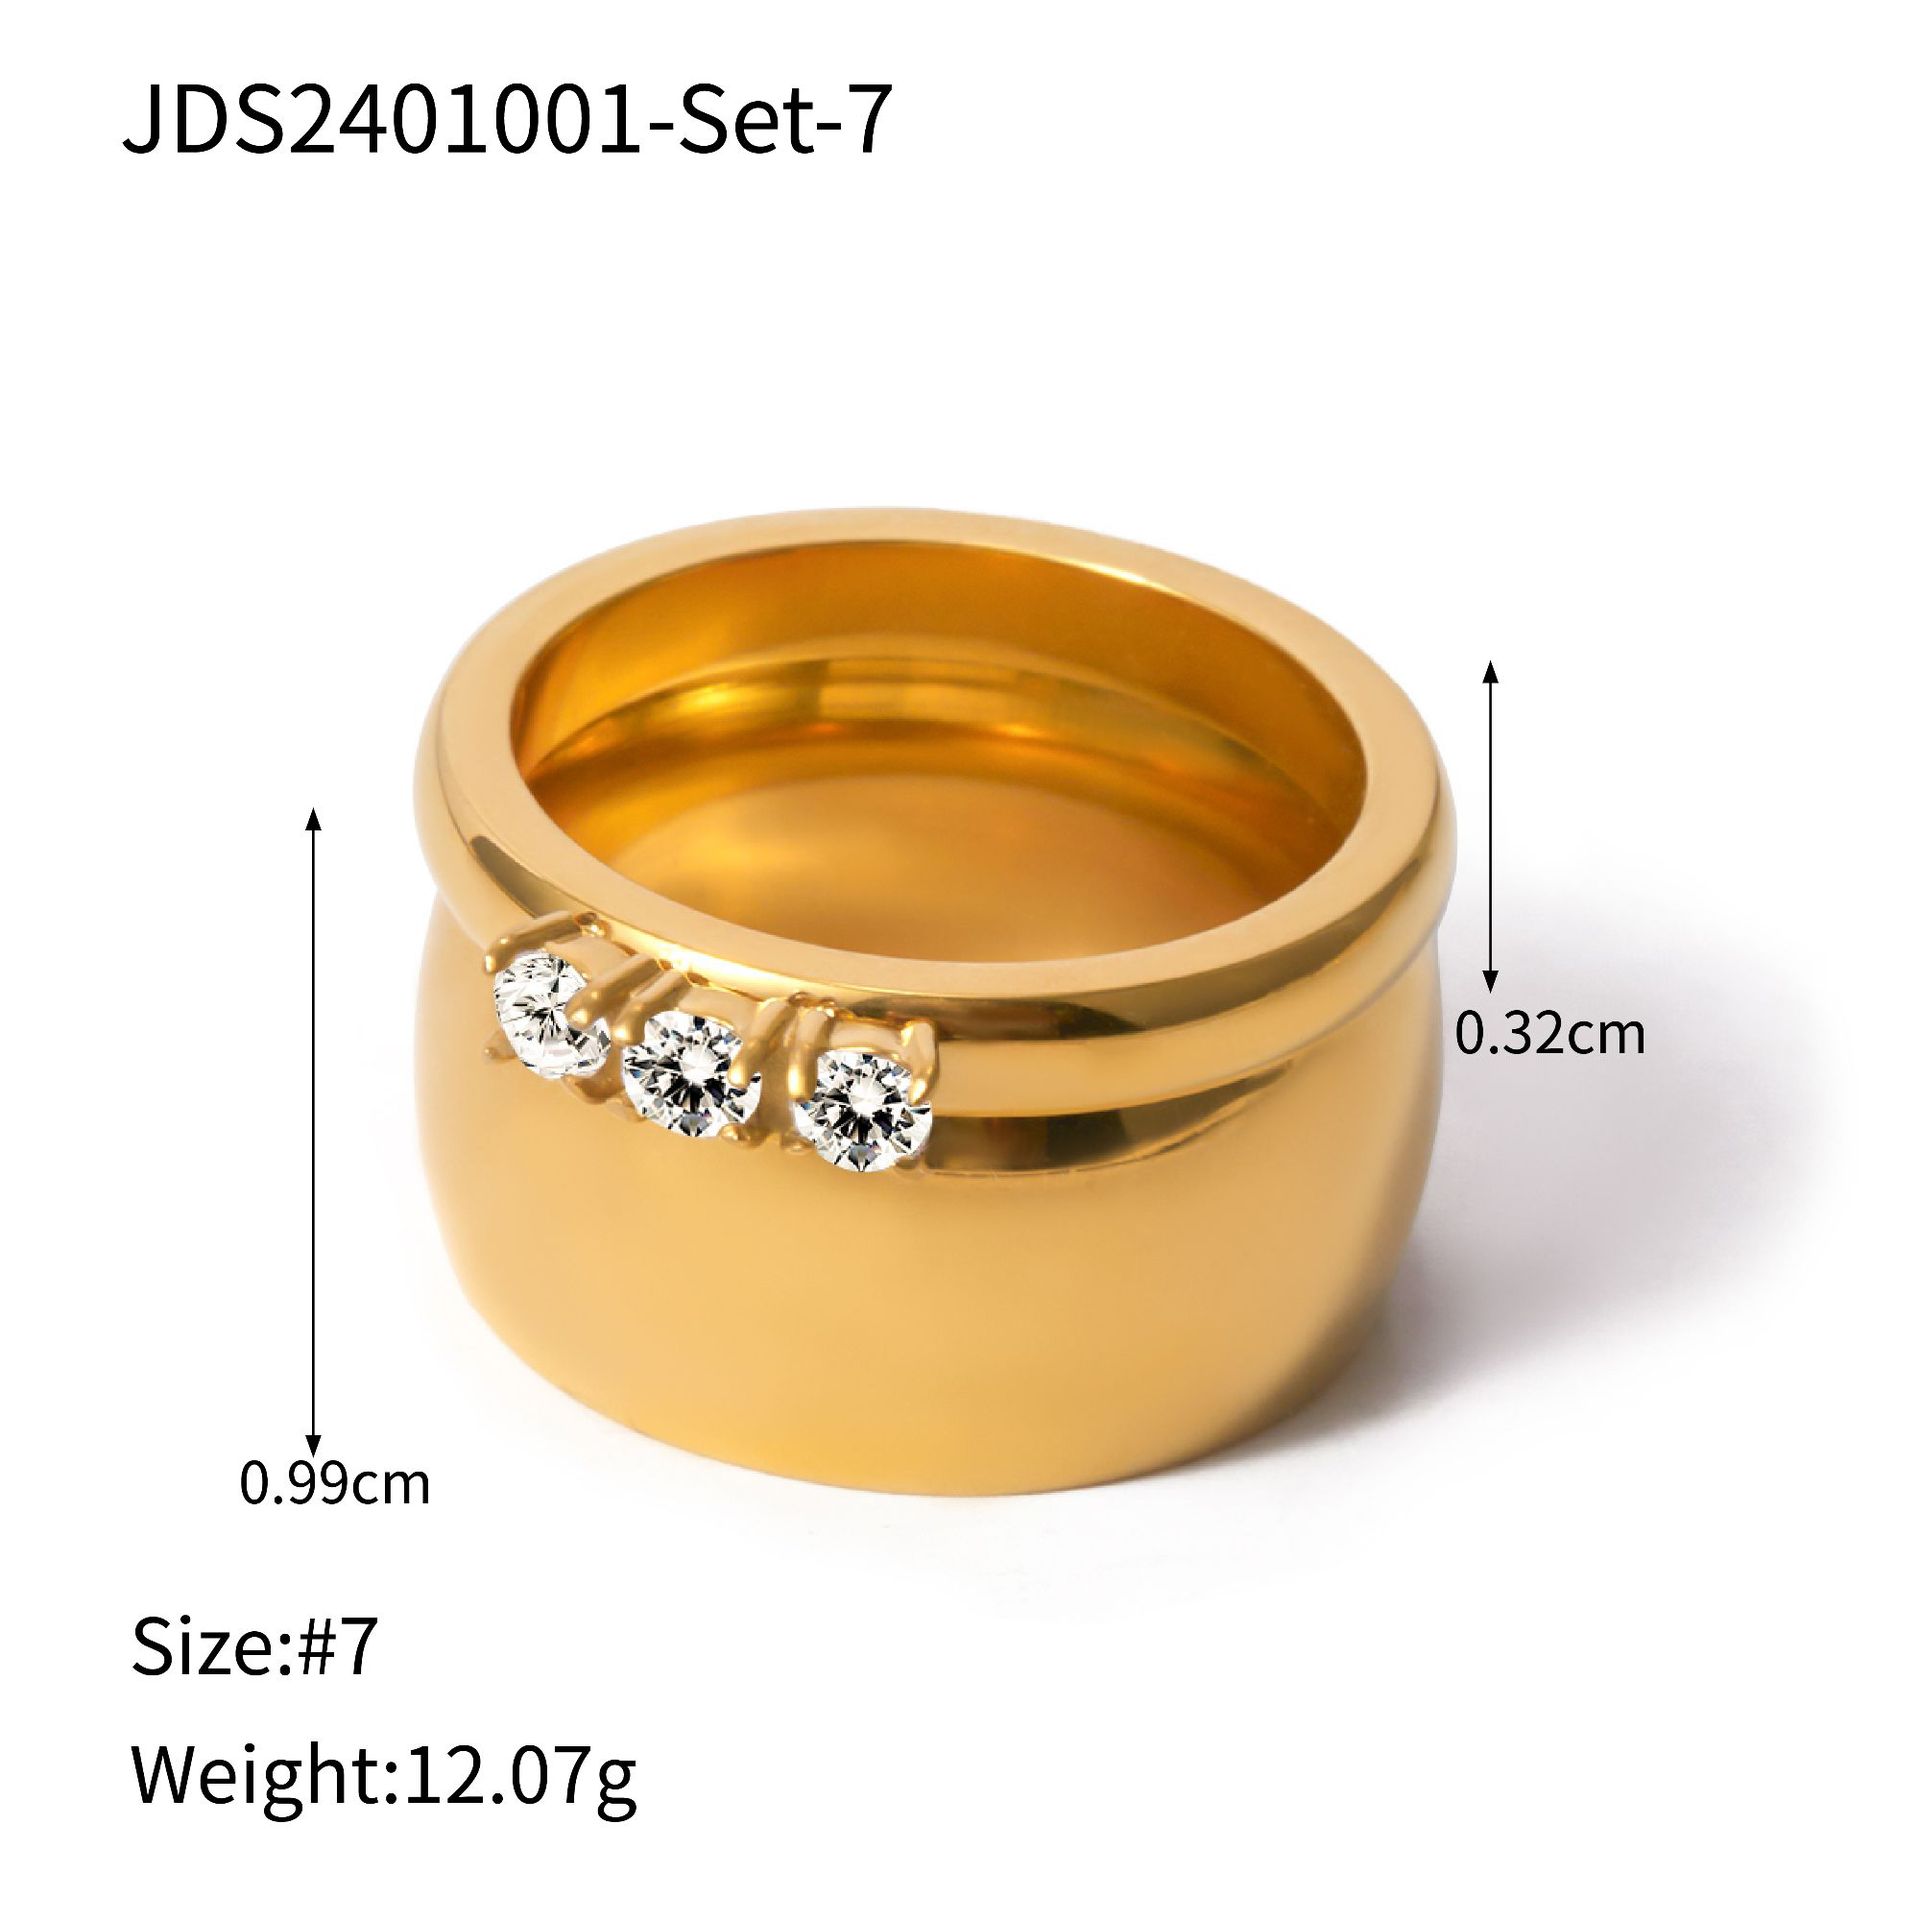 2:JDS2401001-Set-7